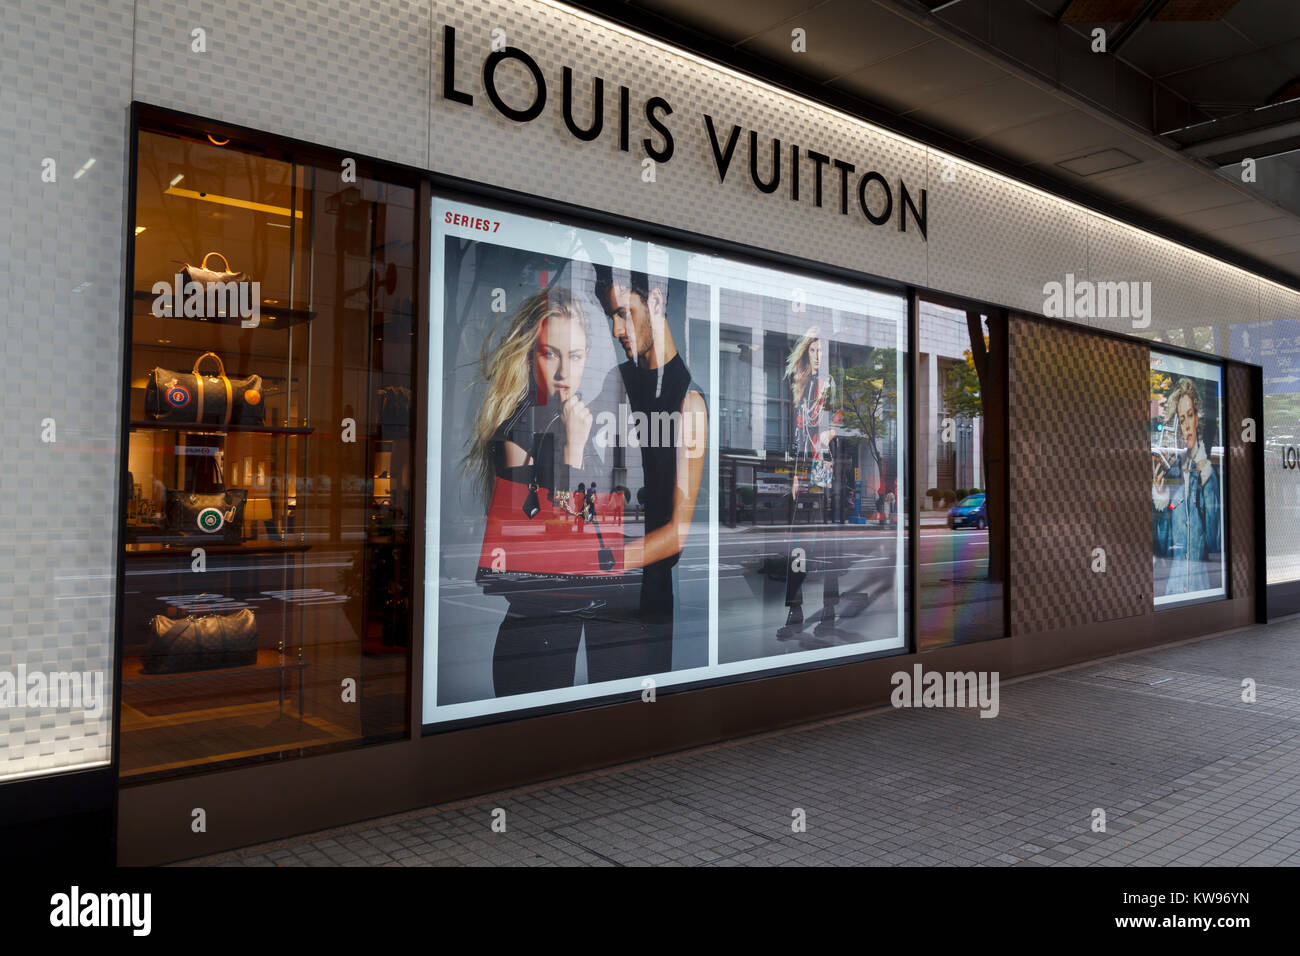 Schöner Laden Louis Vuitton, Vitrine Mit Kleidung. Moskau. 01.11